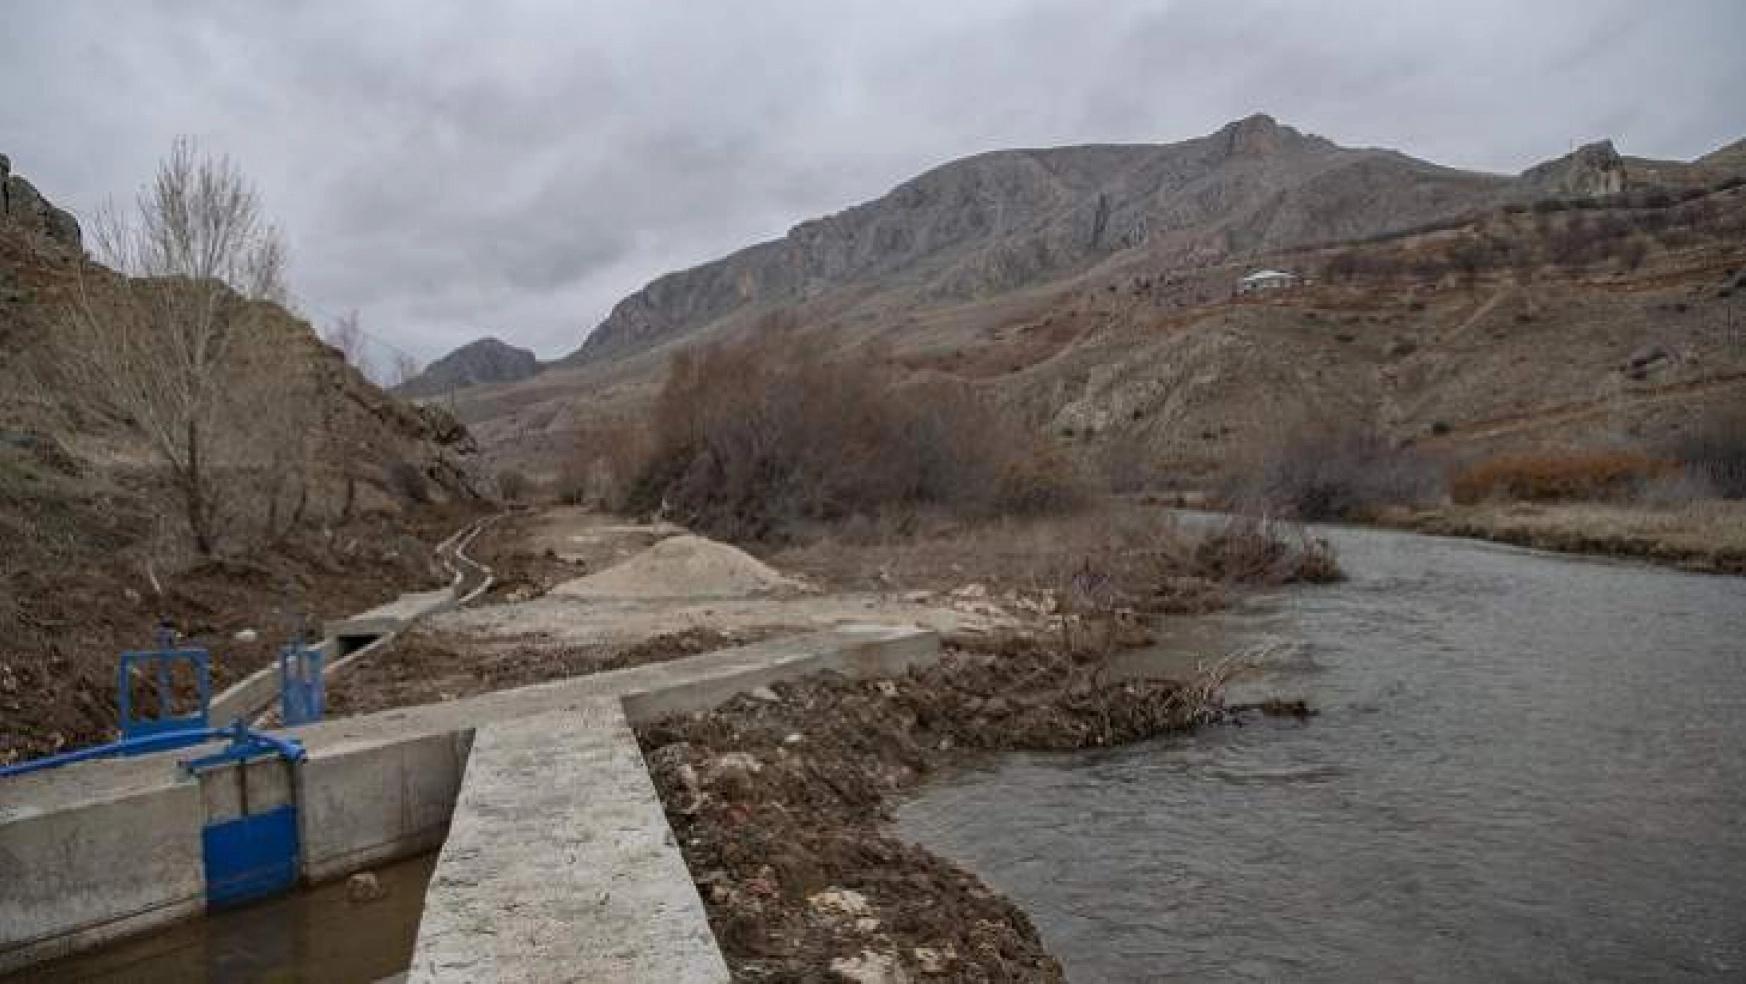 Maski'den Kuluncak Kızılhisar'a4 Km'liksulama Kanalı